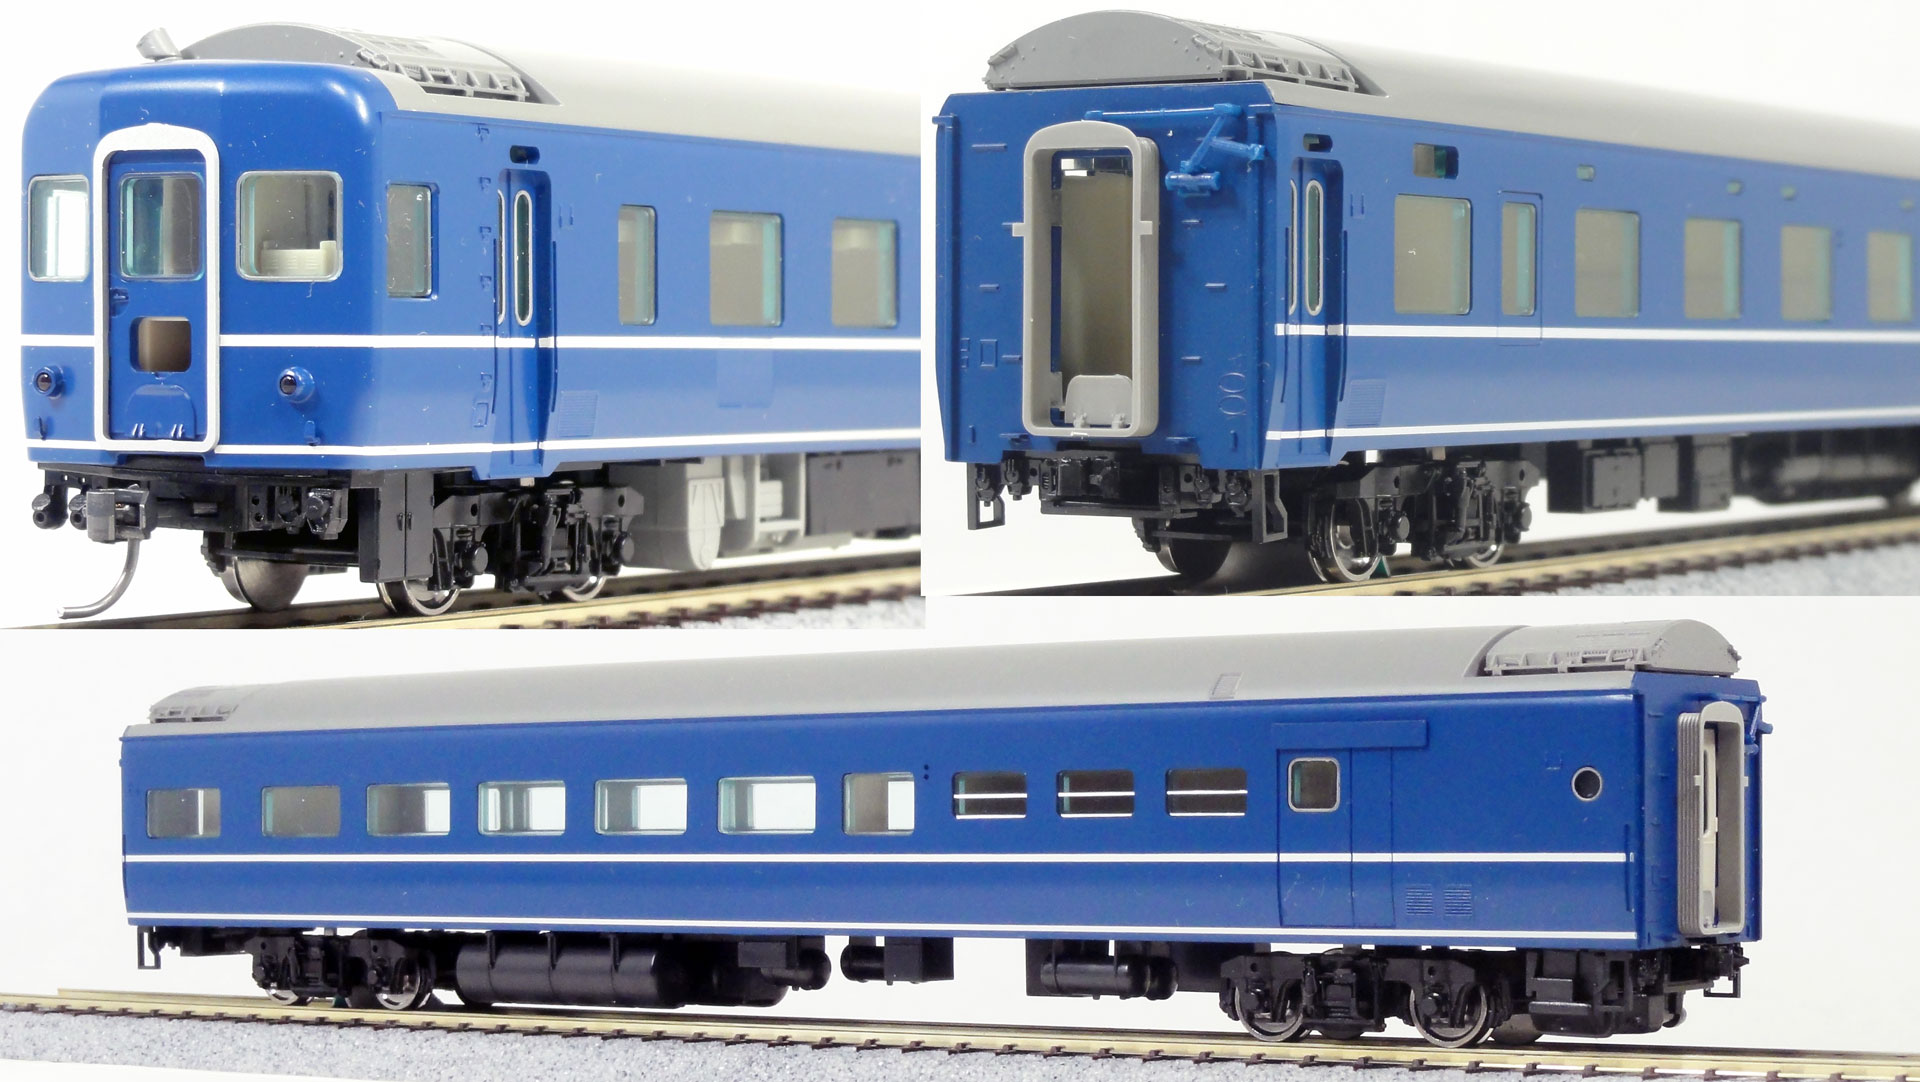 三次元模型設計概論 更新記録 Blog: 【TOMIX HO】14系特急寝台車と【KATO HO】24系25形寝台客車の紹介と詳細写真スライドショー